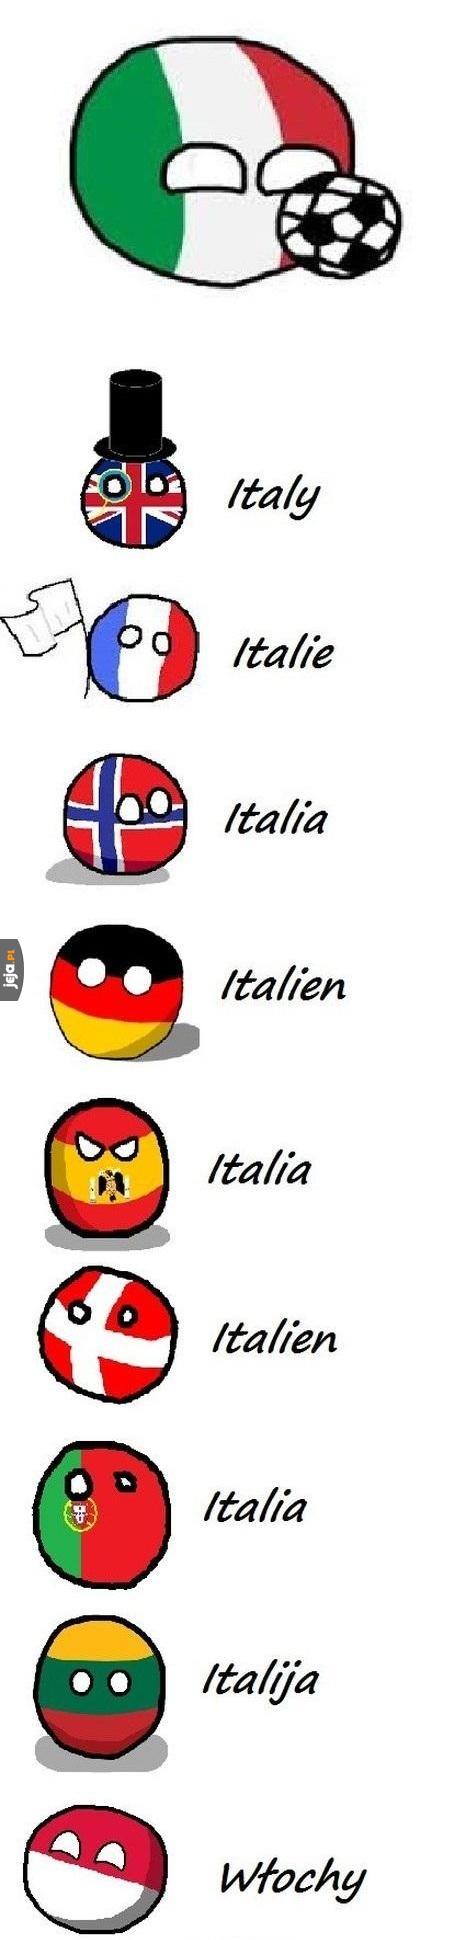 Italia czy Włochy?